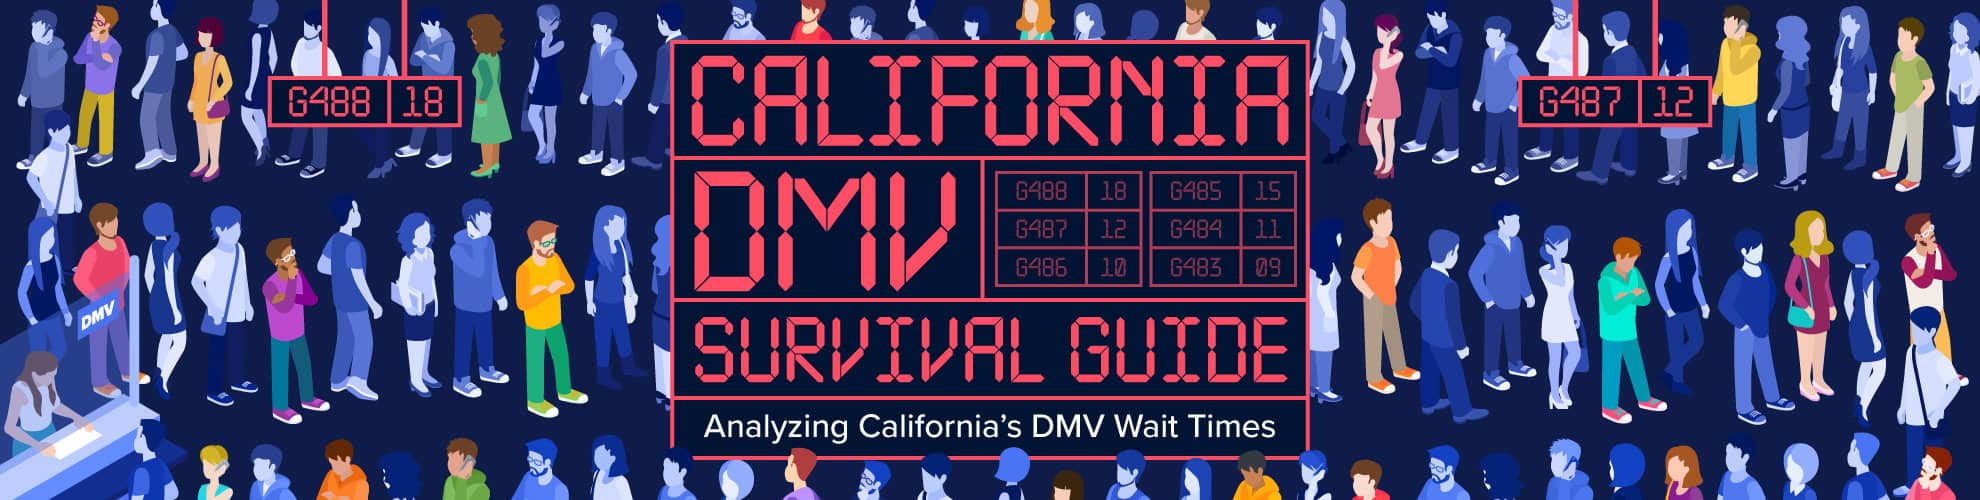 California DMV Survival Guide, Analyzing California's DMV Wait TImes